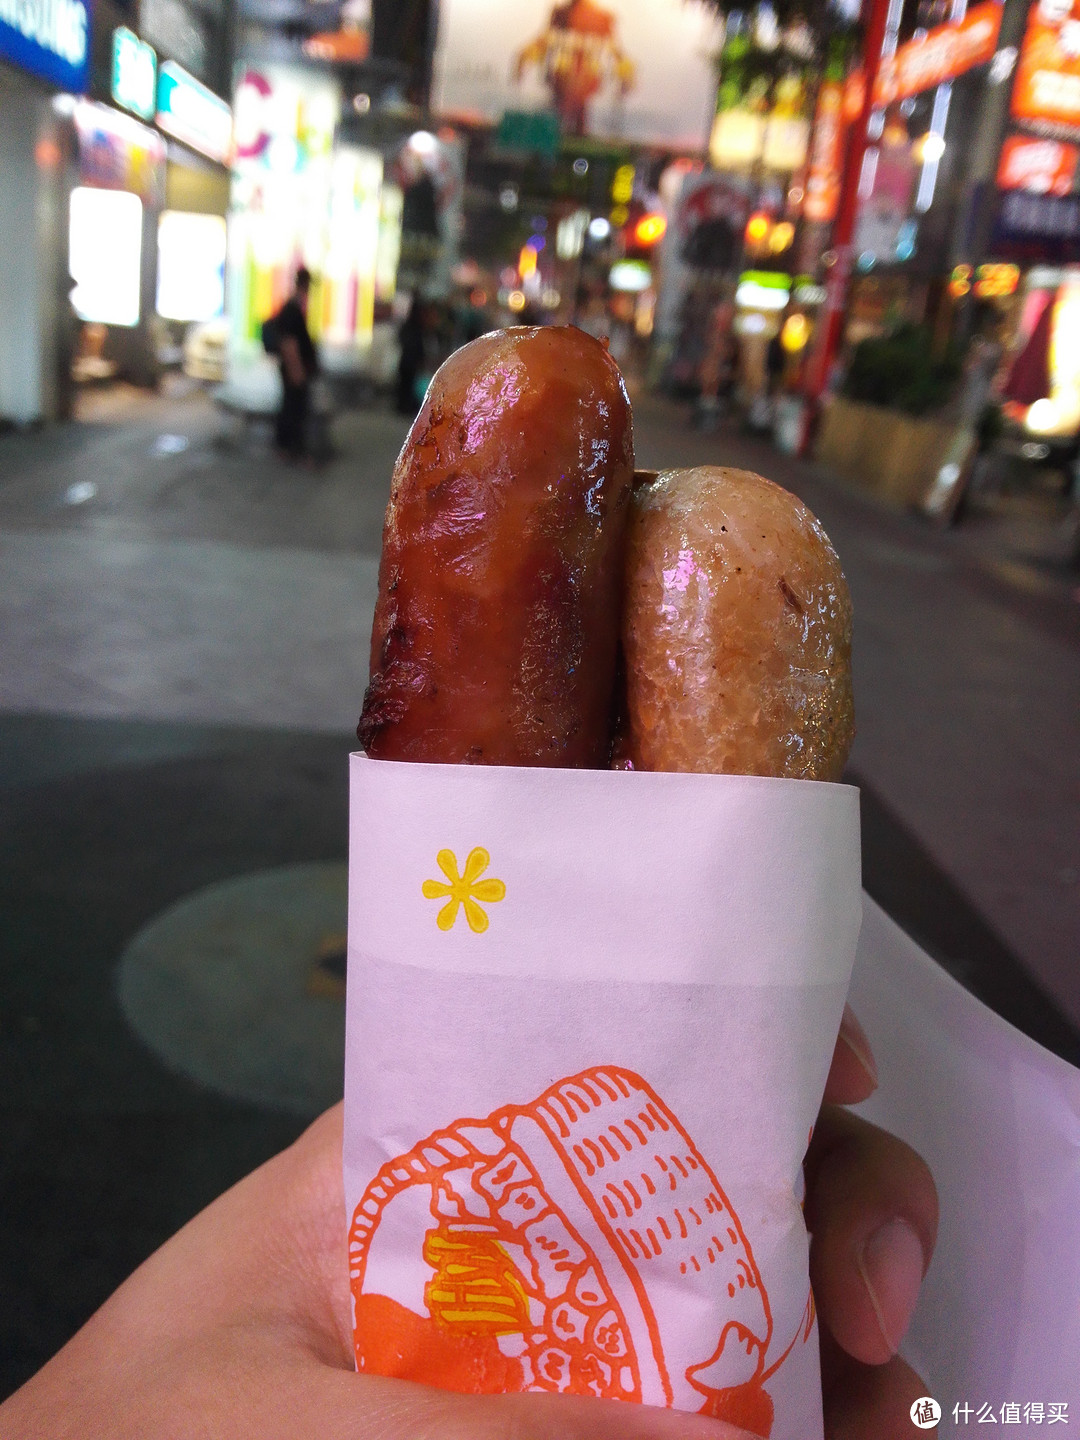 大肠包小肠 这个很经典的台湾食物，在西门町到处有卖